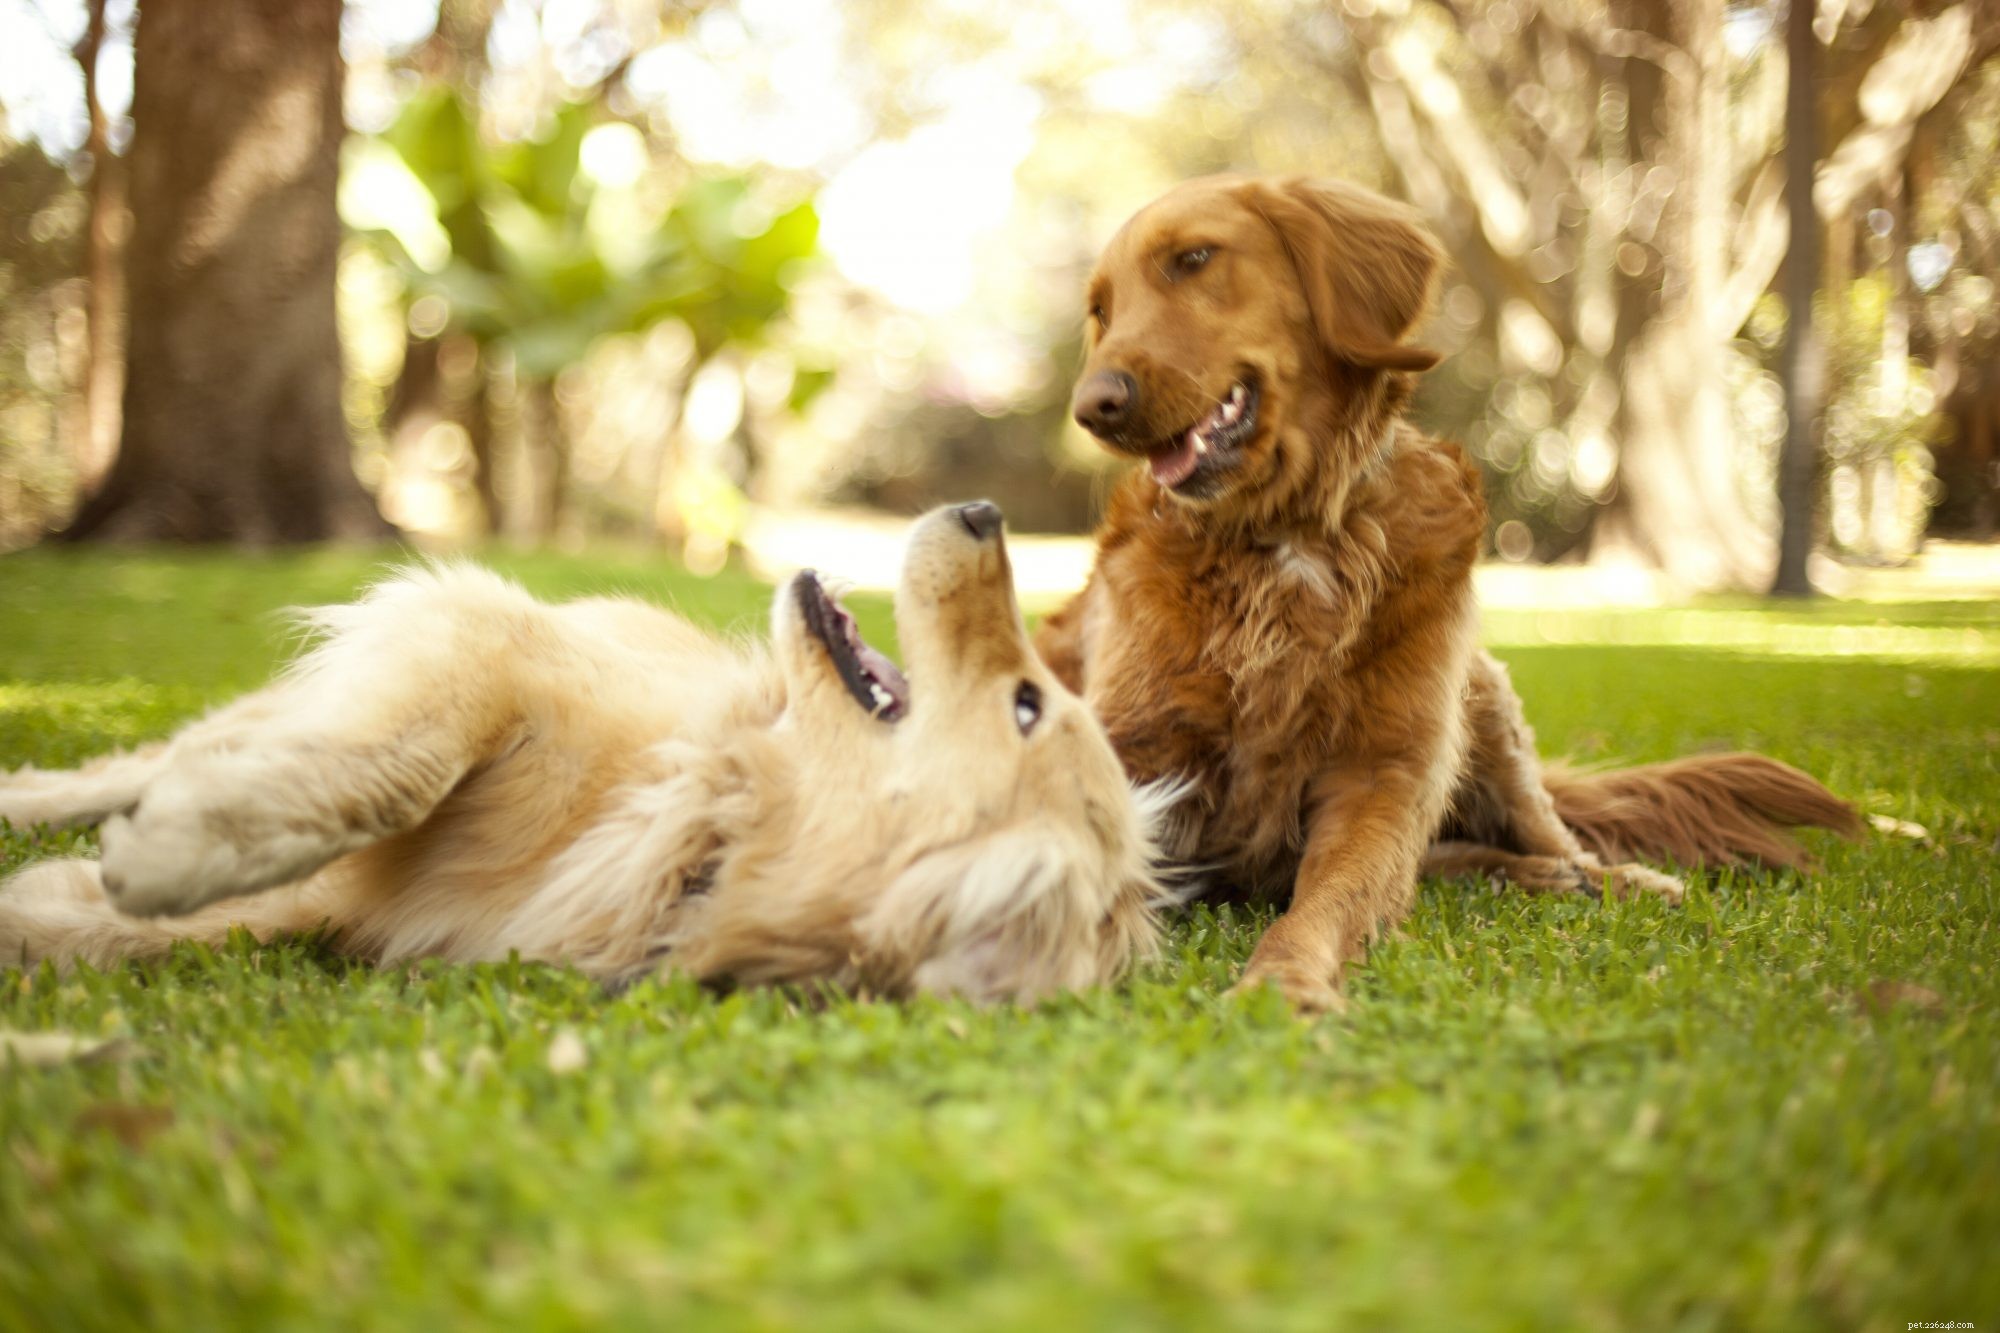 Honden zijn meer geneigd om met andere huisdieren te spelen als hun baasje toekijkt, zo blijkt uit een nieuwe studie